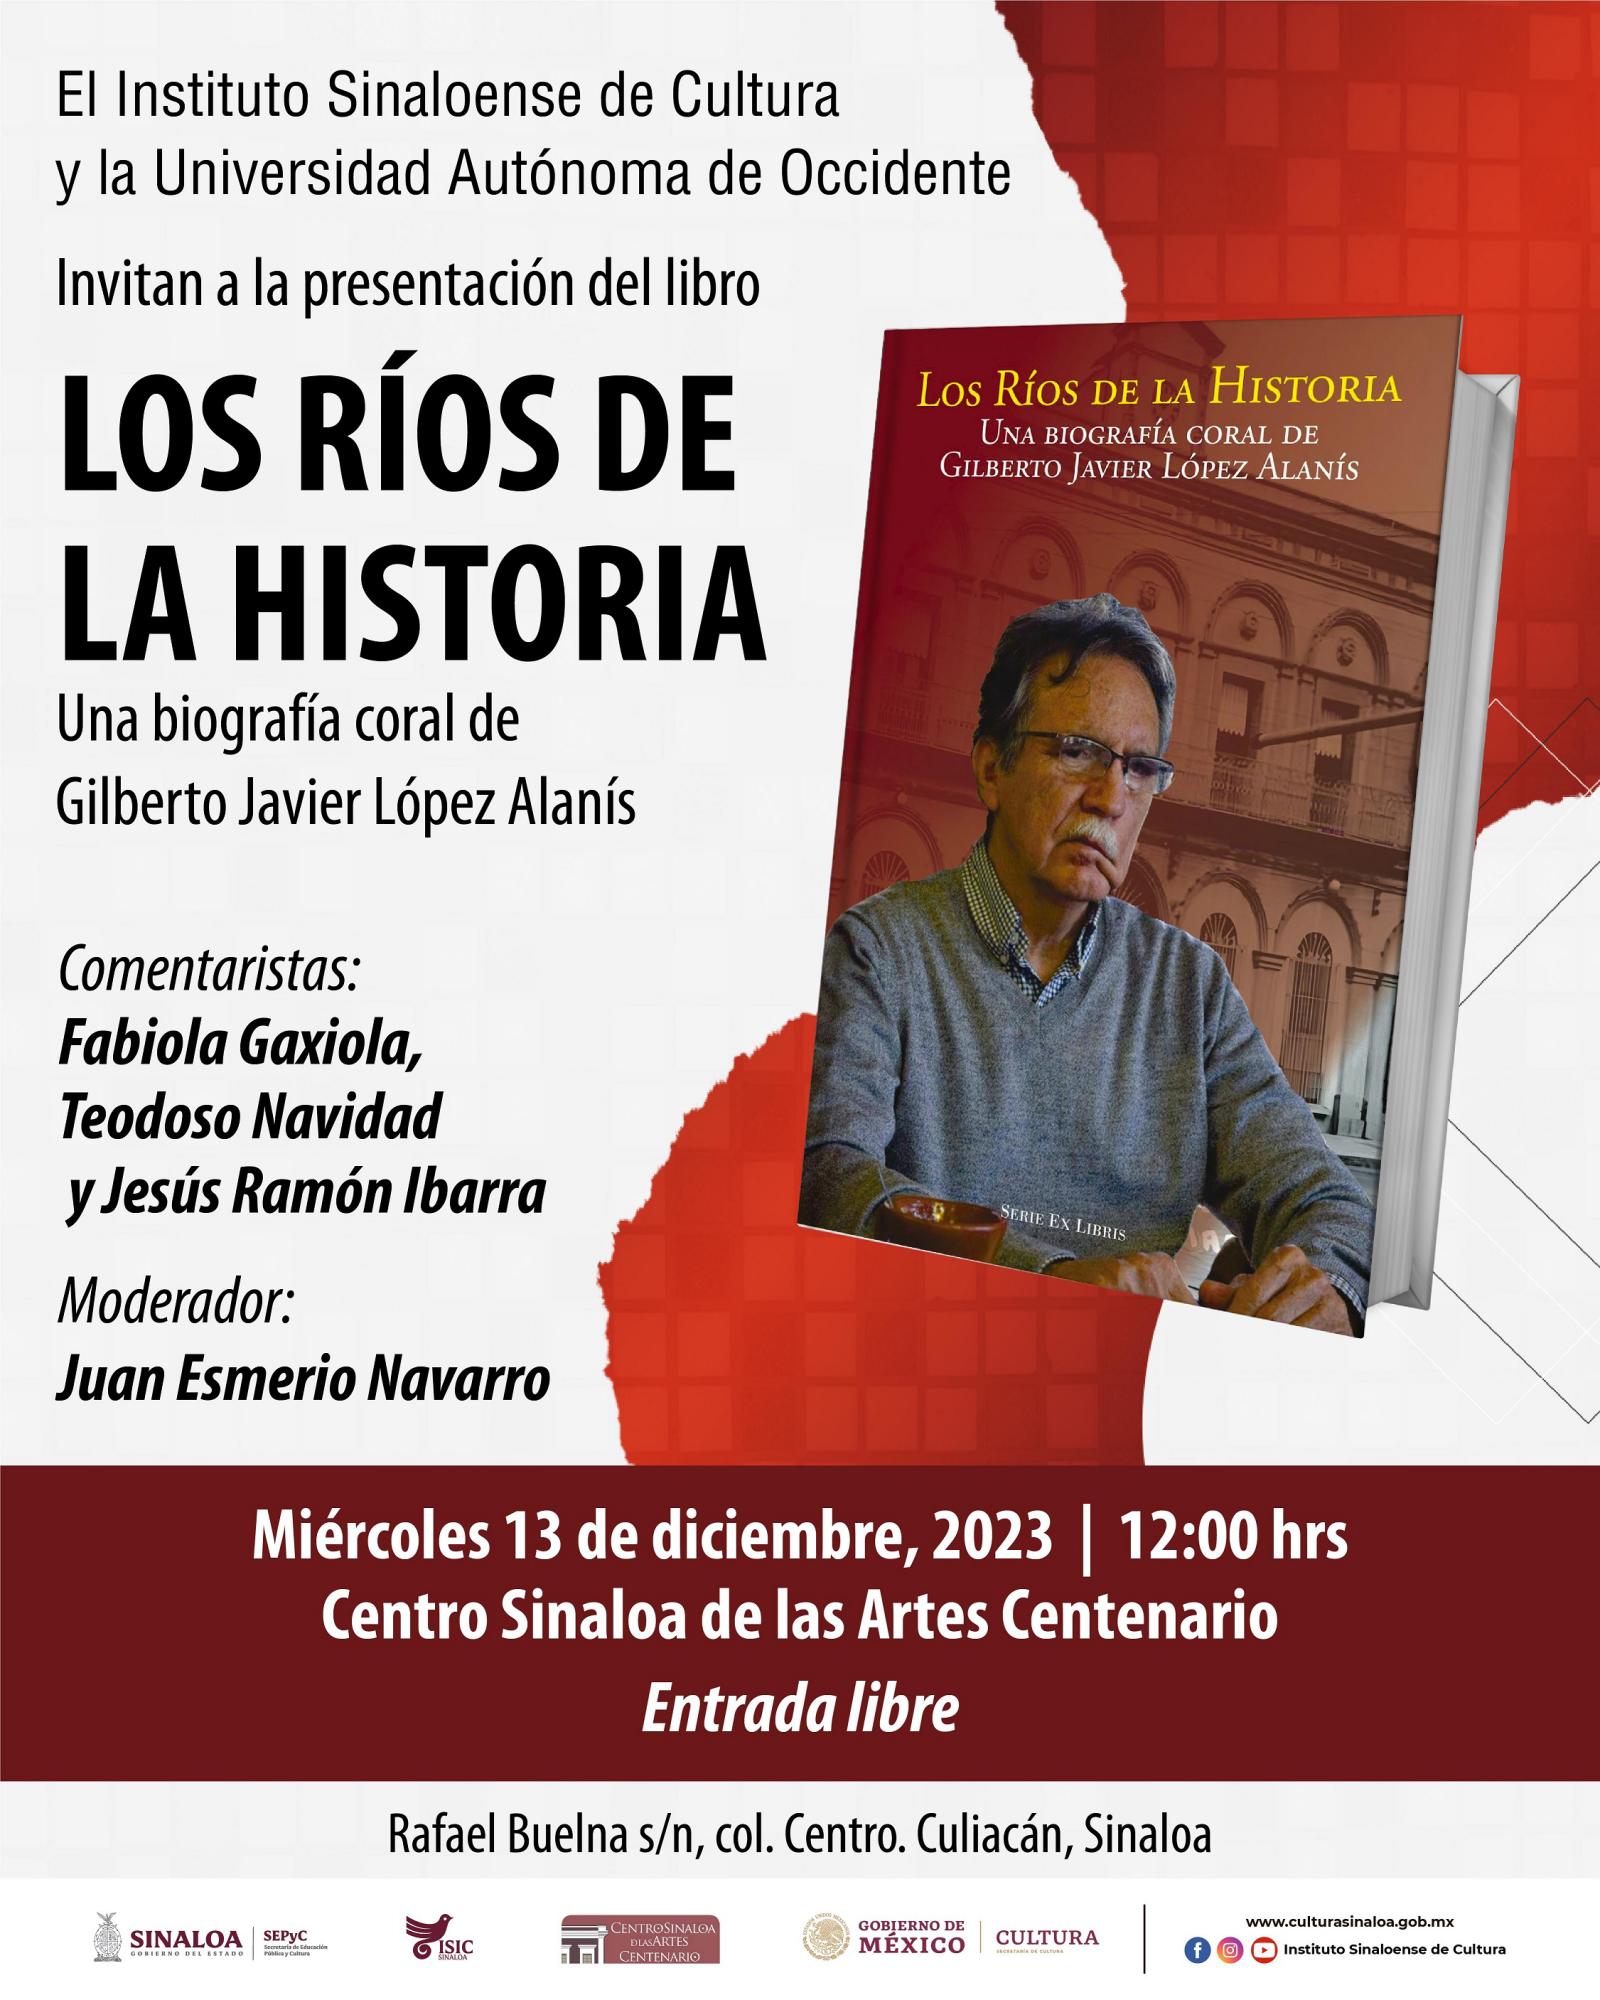 $!La presentación se llevará a cabo este miércoles 13, en el Centro Sinaloa de las Artes Centenario.